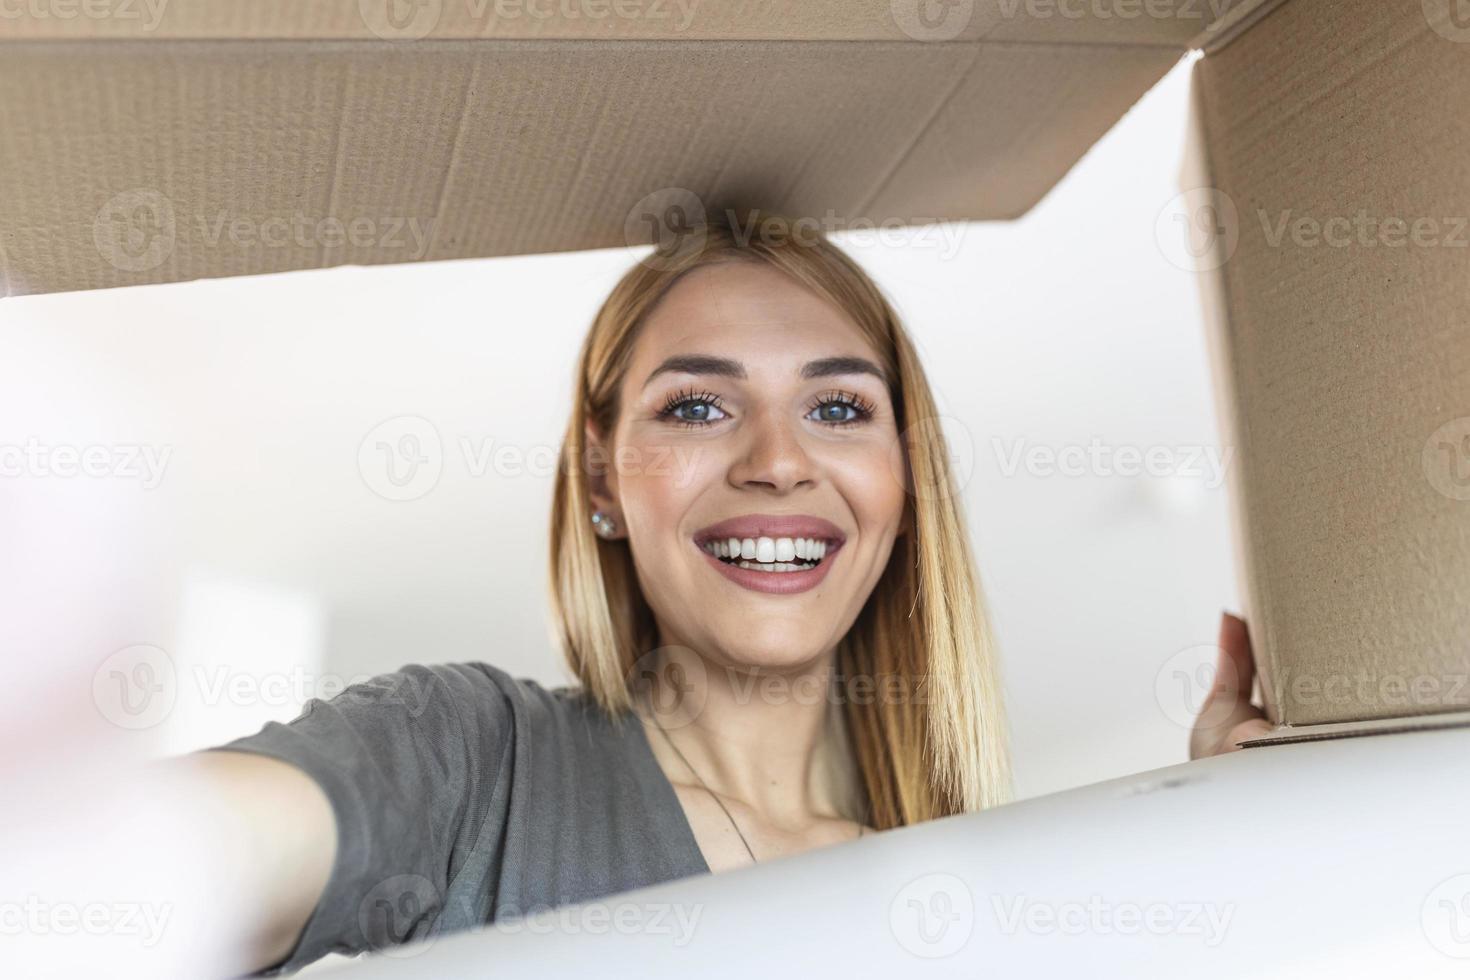 jolie jeune femme heureuse ouvrant une boîte en carton. femme à la surprise d'un cadeau de noël lors de l'ouverture de la boîte. photo